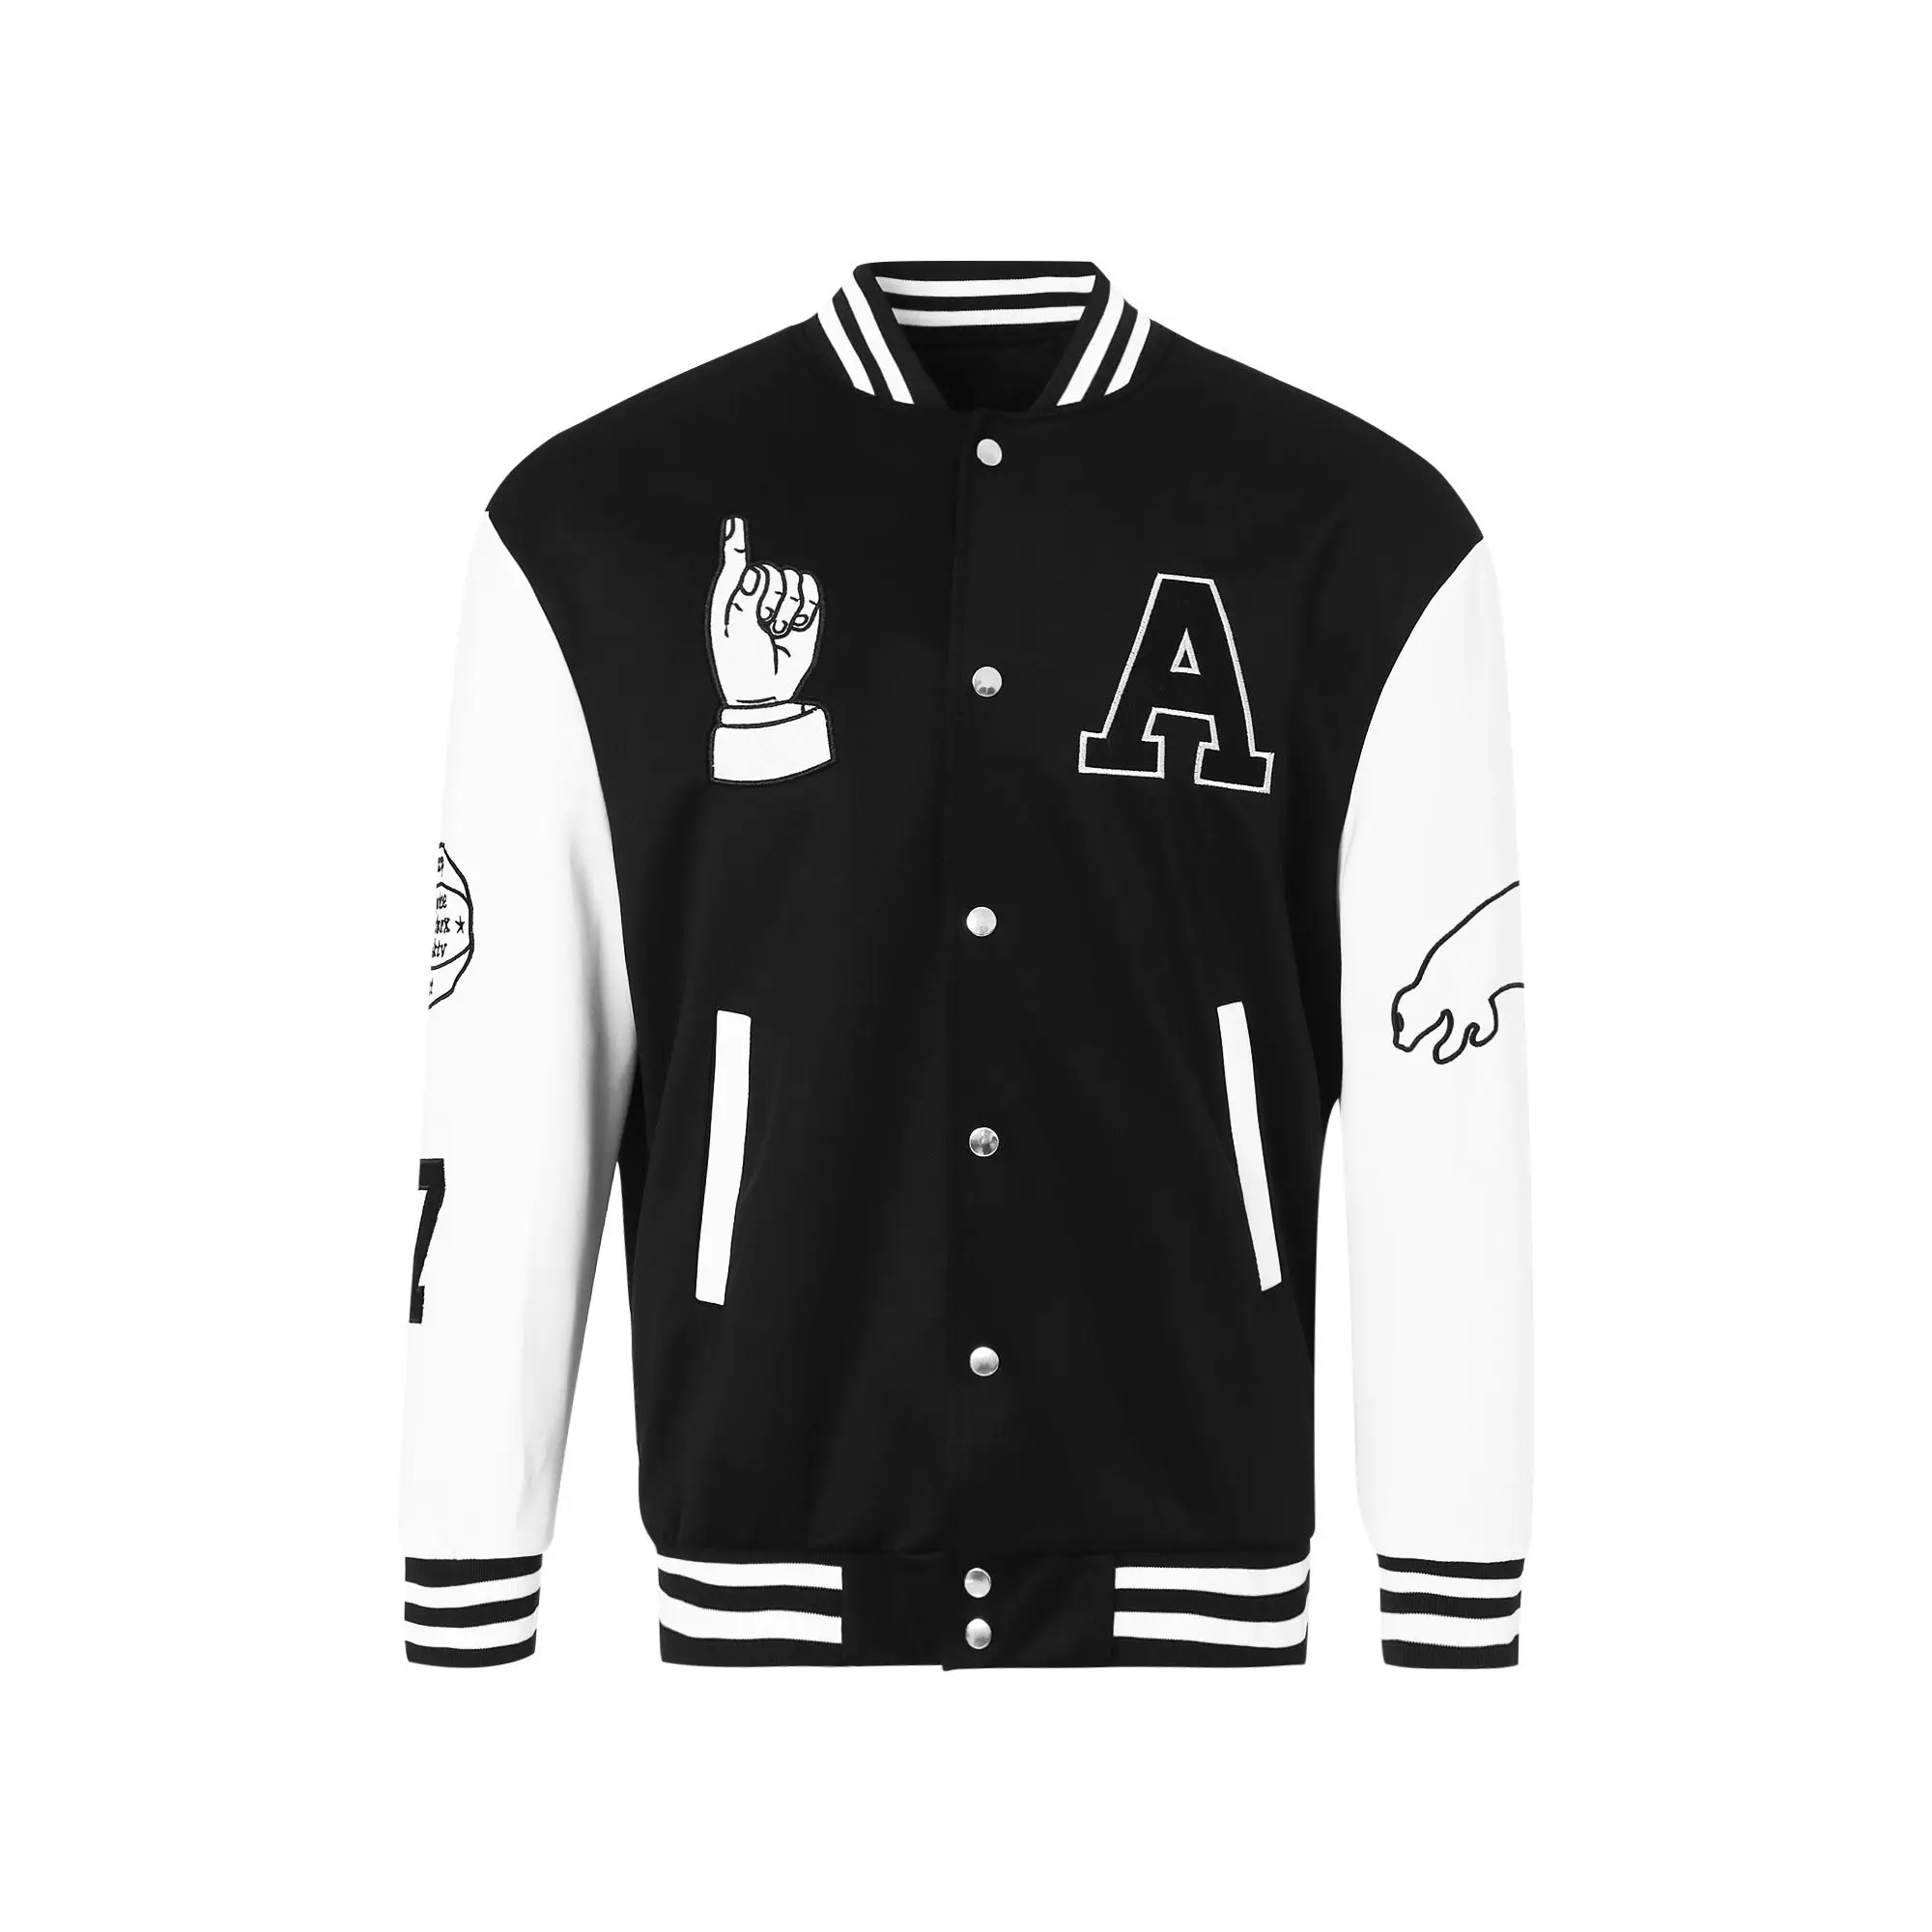 Jaquetas masculinas de varisidade, novas jaquetas em lã 100%, cor preta e branca, logotipo personalizado, bordado, para inverno